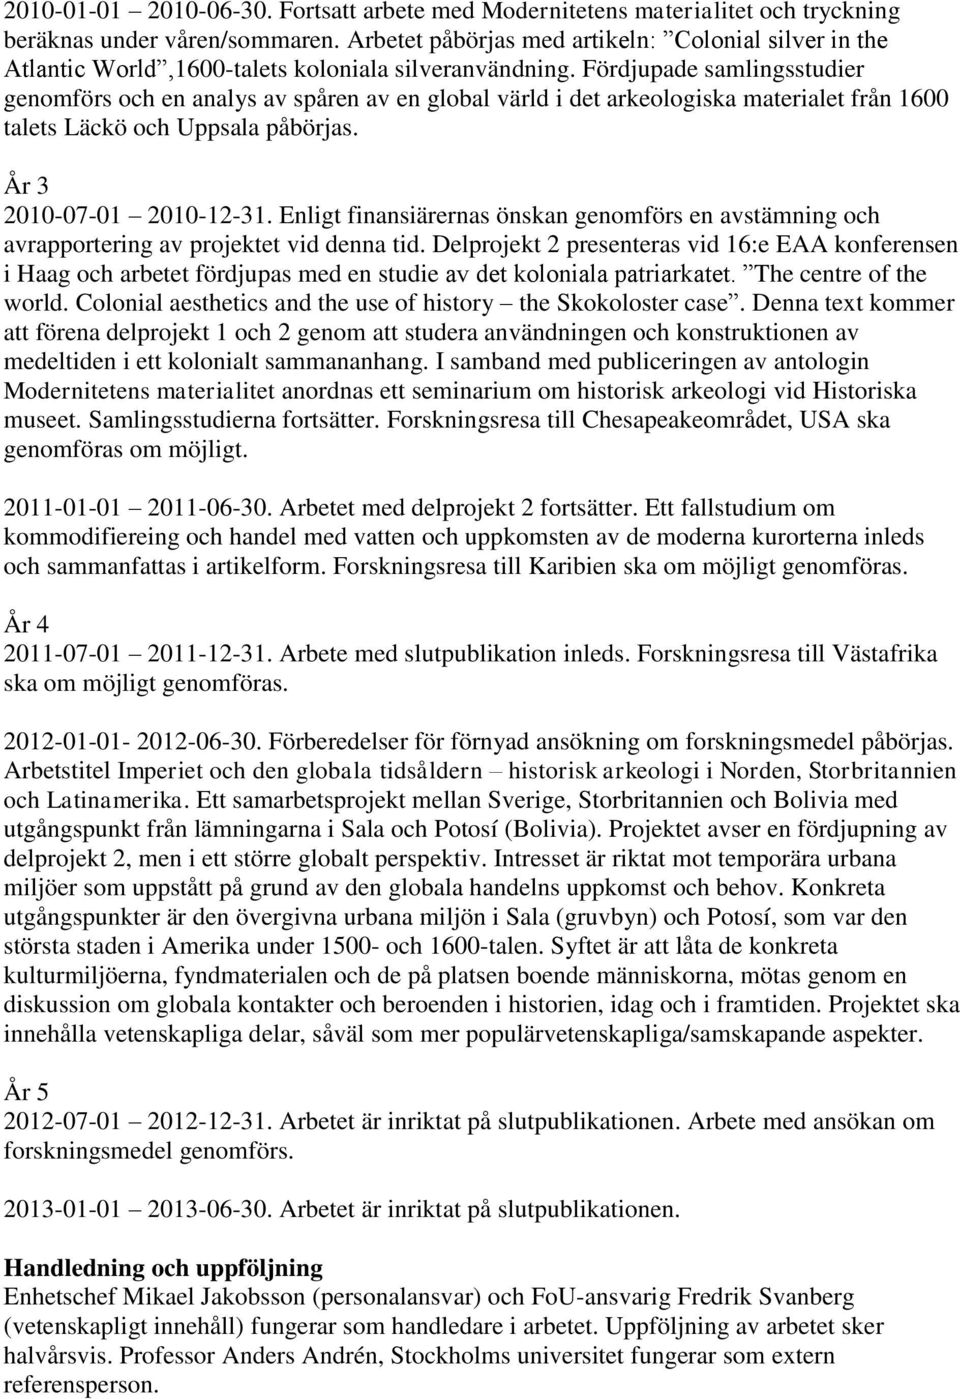 Fördjupade samlingsstudier genomförs och en analys av spåren av en global värld i det arkeologiska materialet från 1600 talets Läckö och Uppsala påbörjas. År 3 2010-07-01 2010-12-31.